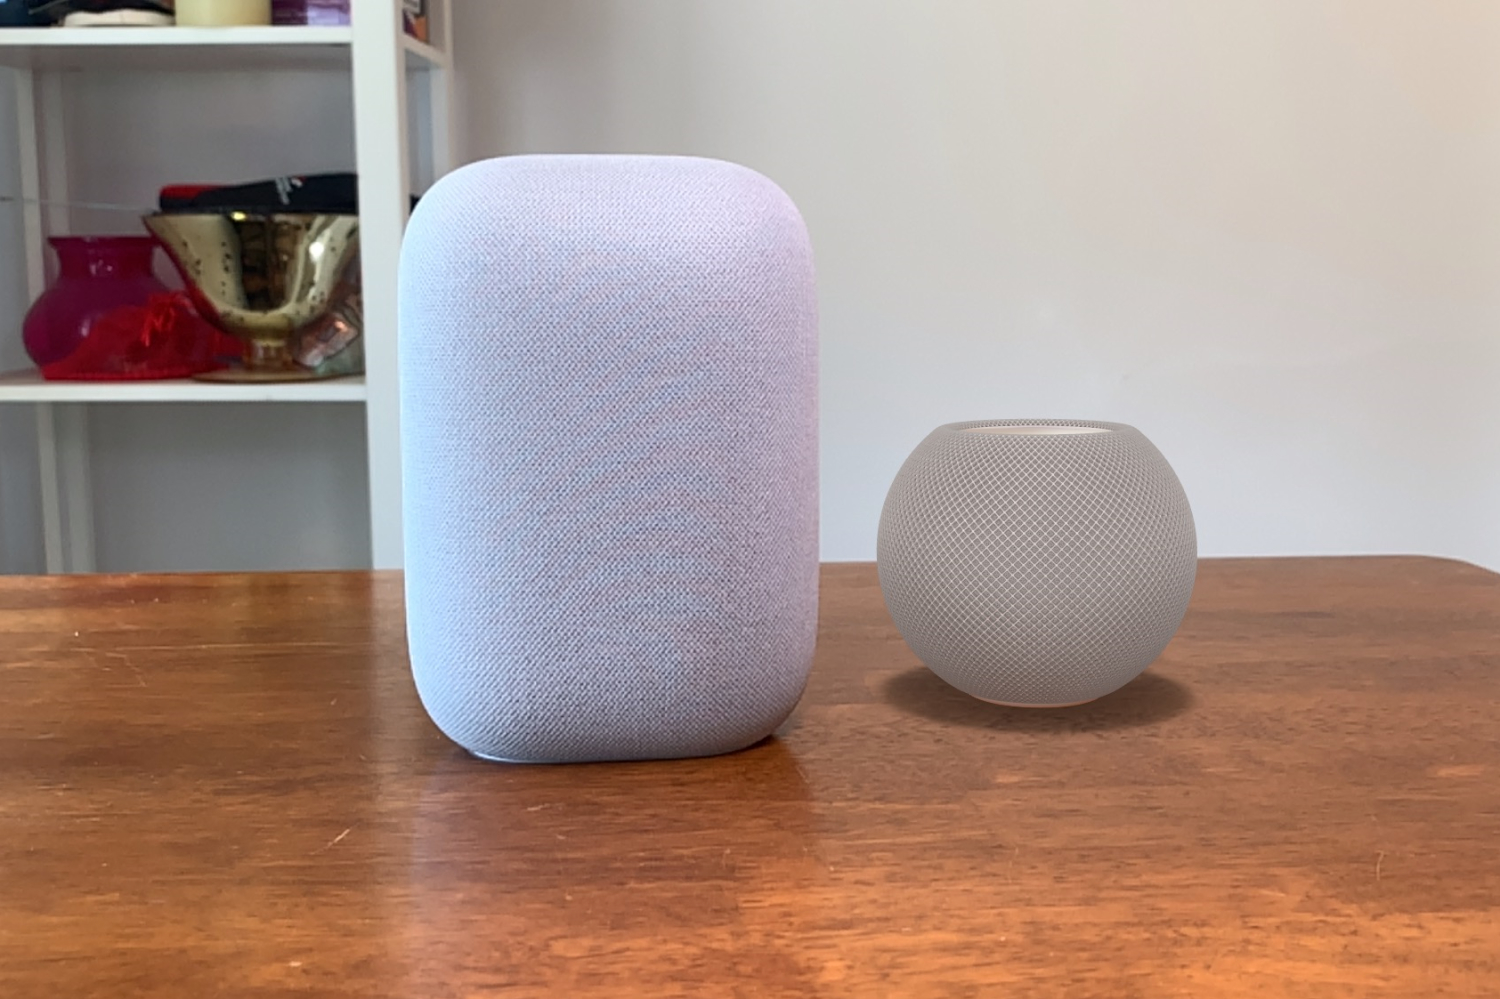 Apple HomePod mini render vs Google Nest Audio na mesa